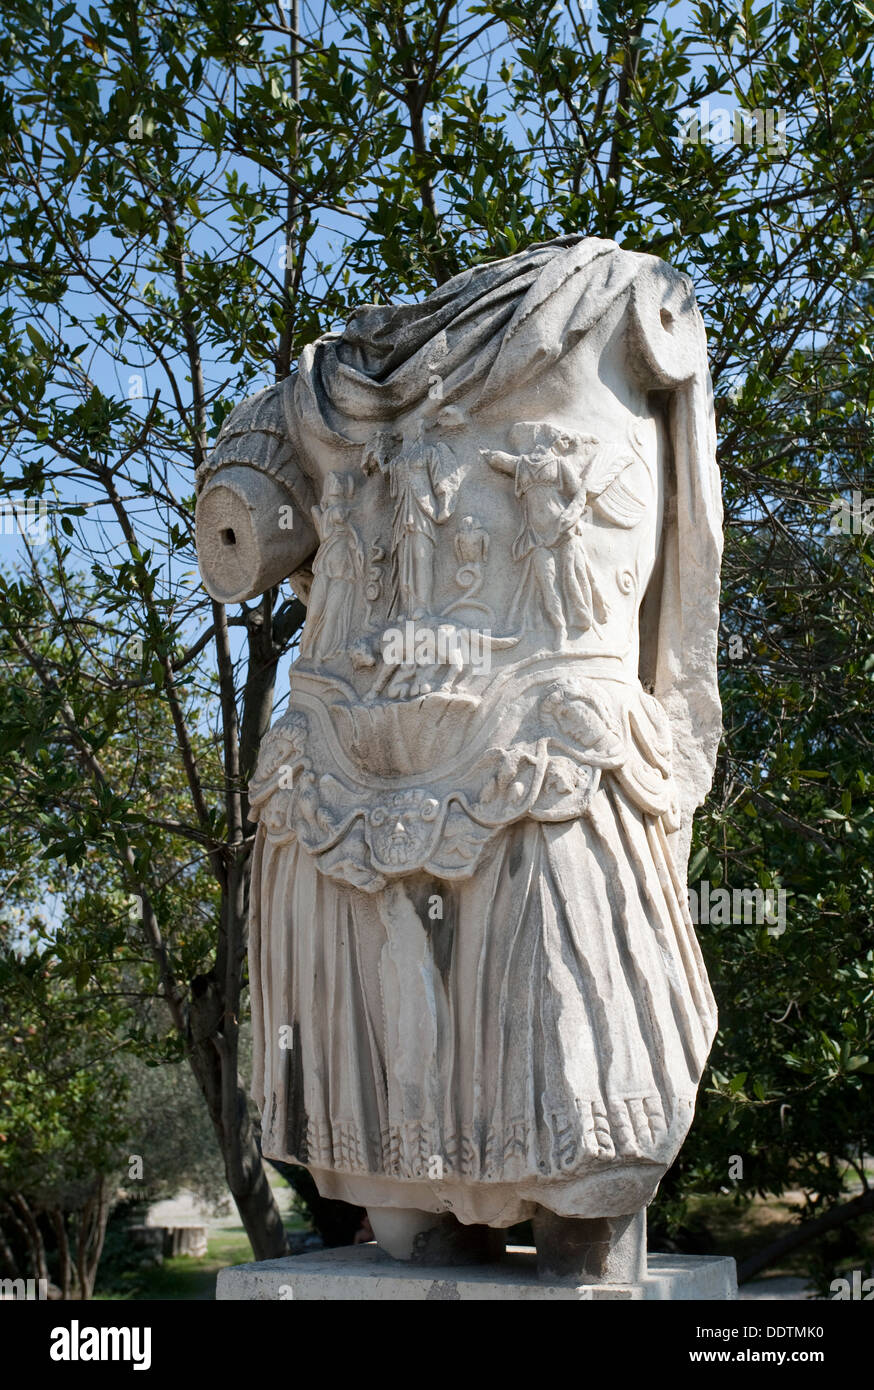 La statua dell'Imperatore Adriano (117-138) al Greek Agorà di Atene, Grecia. Artista: Samuel Magal Foto Stock